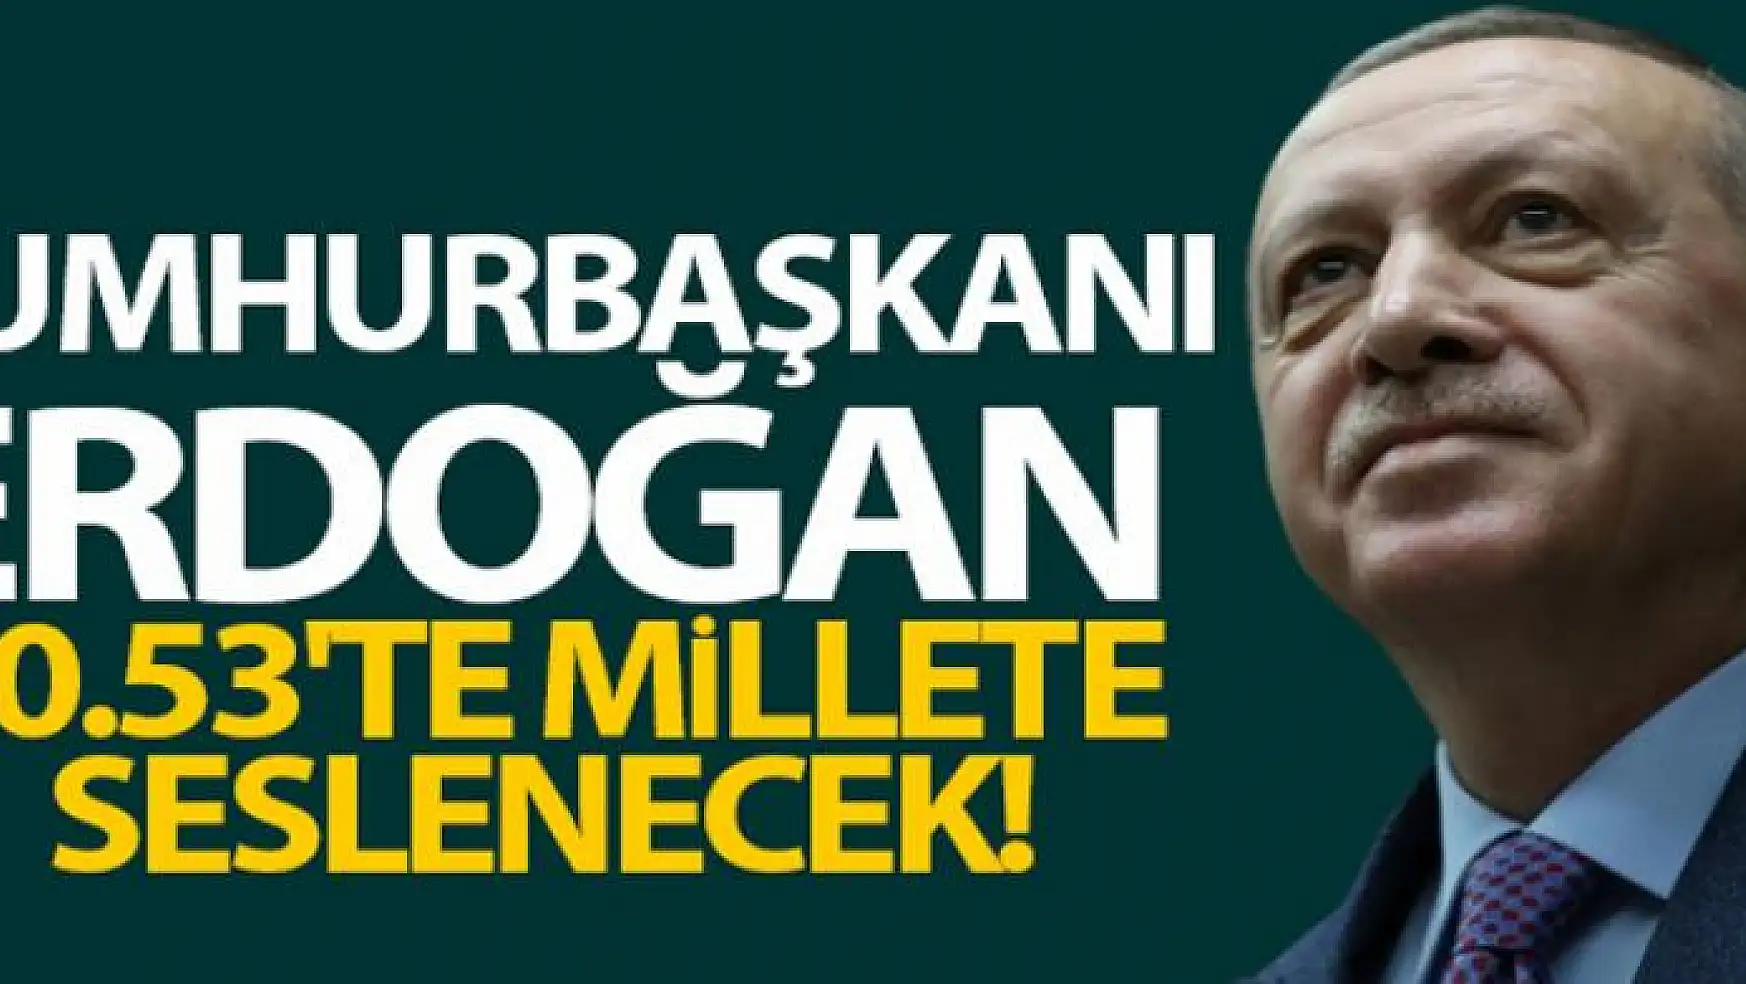 Cumhurbaşkanı Erdoğan bu akşam saat 20:53'te ulusa seslenecek